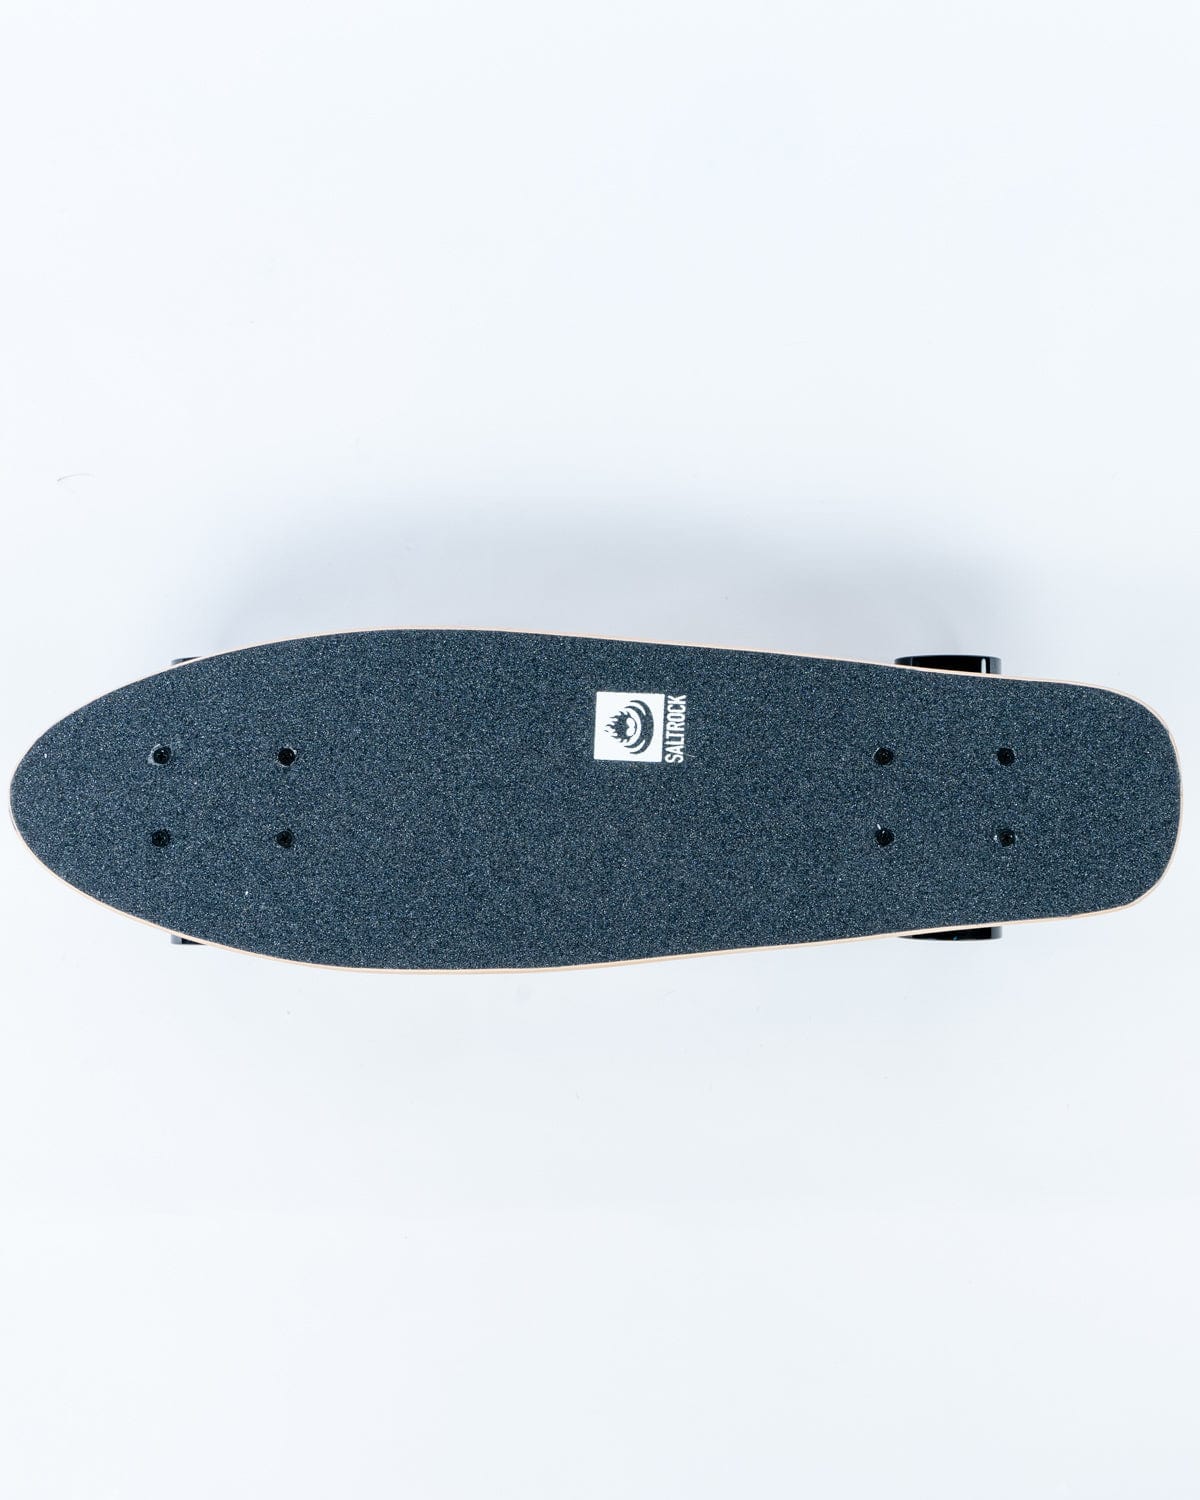 No Mercy - Mini Wooden Skateboard - Saltrock